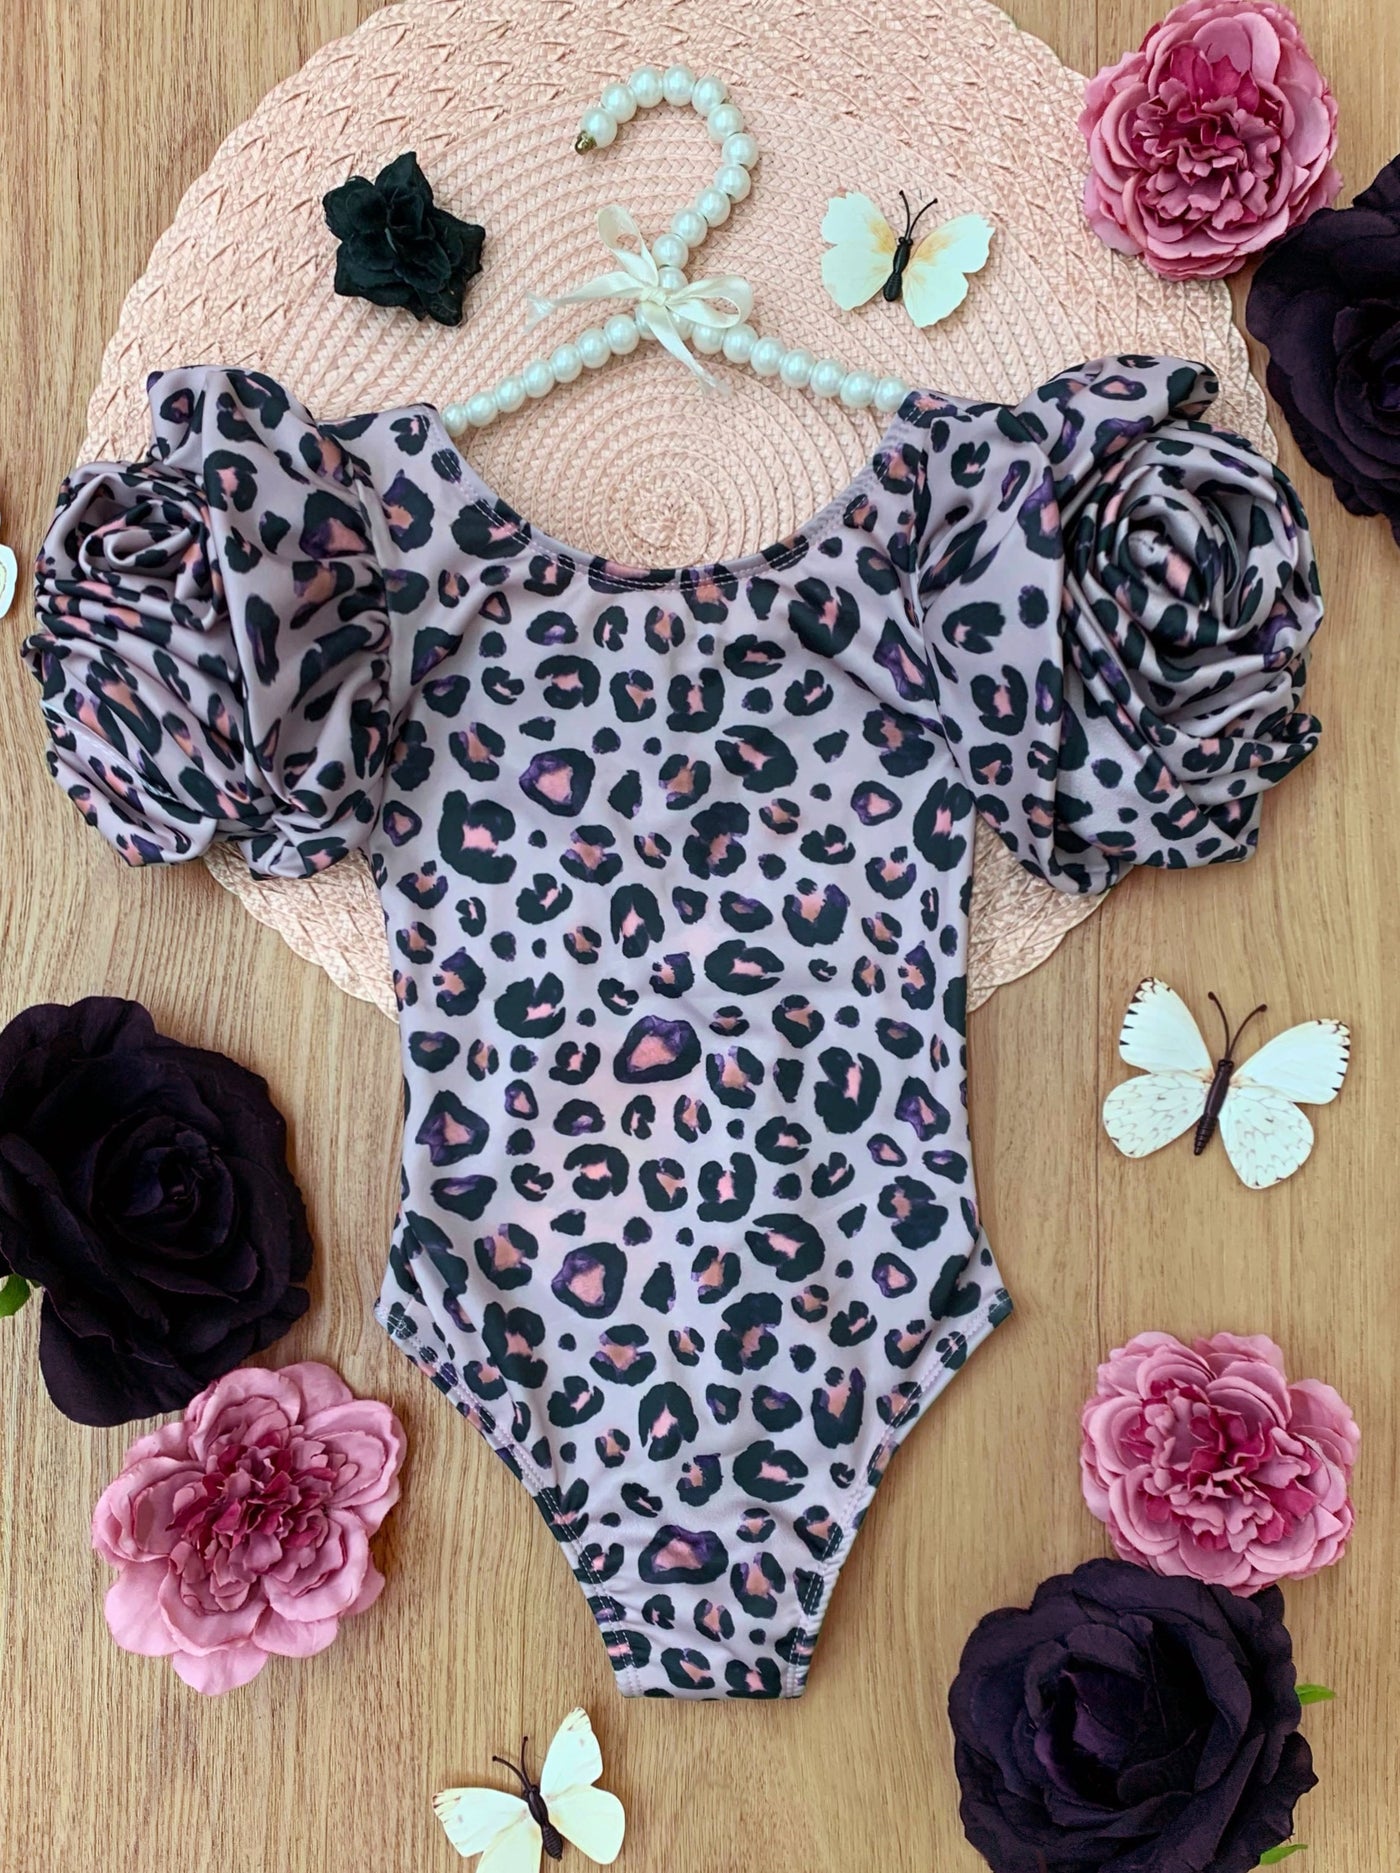 Mia Belle Girls Swimwear | Rose Sleeve Leopard One Piece Swimsuit